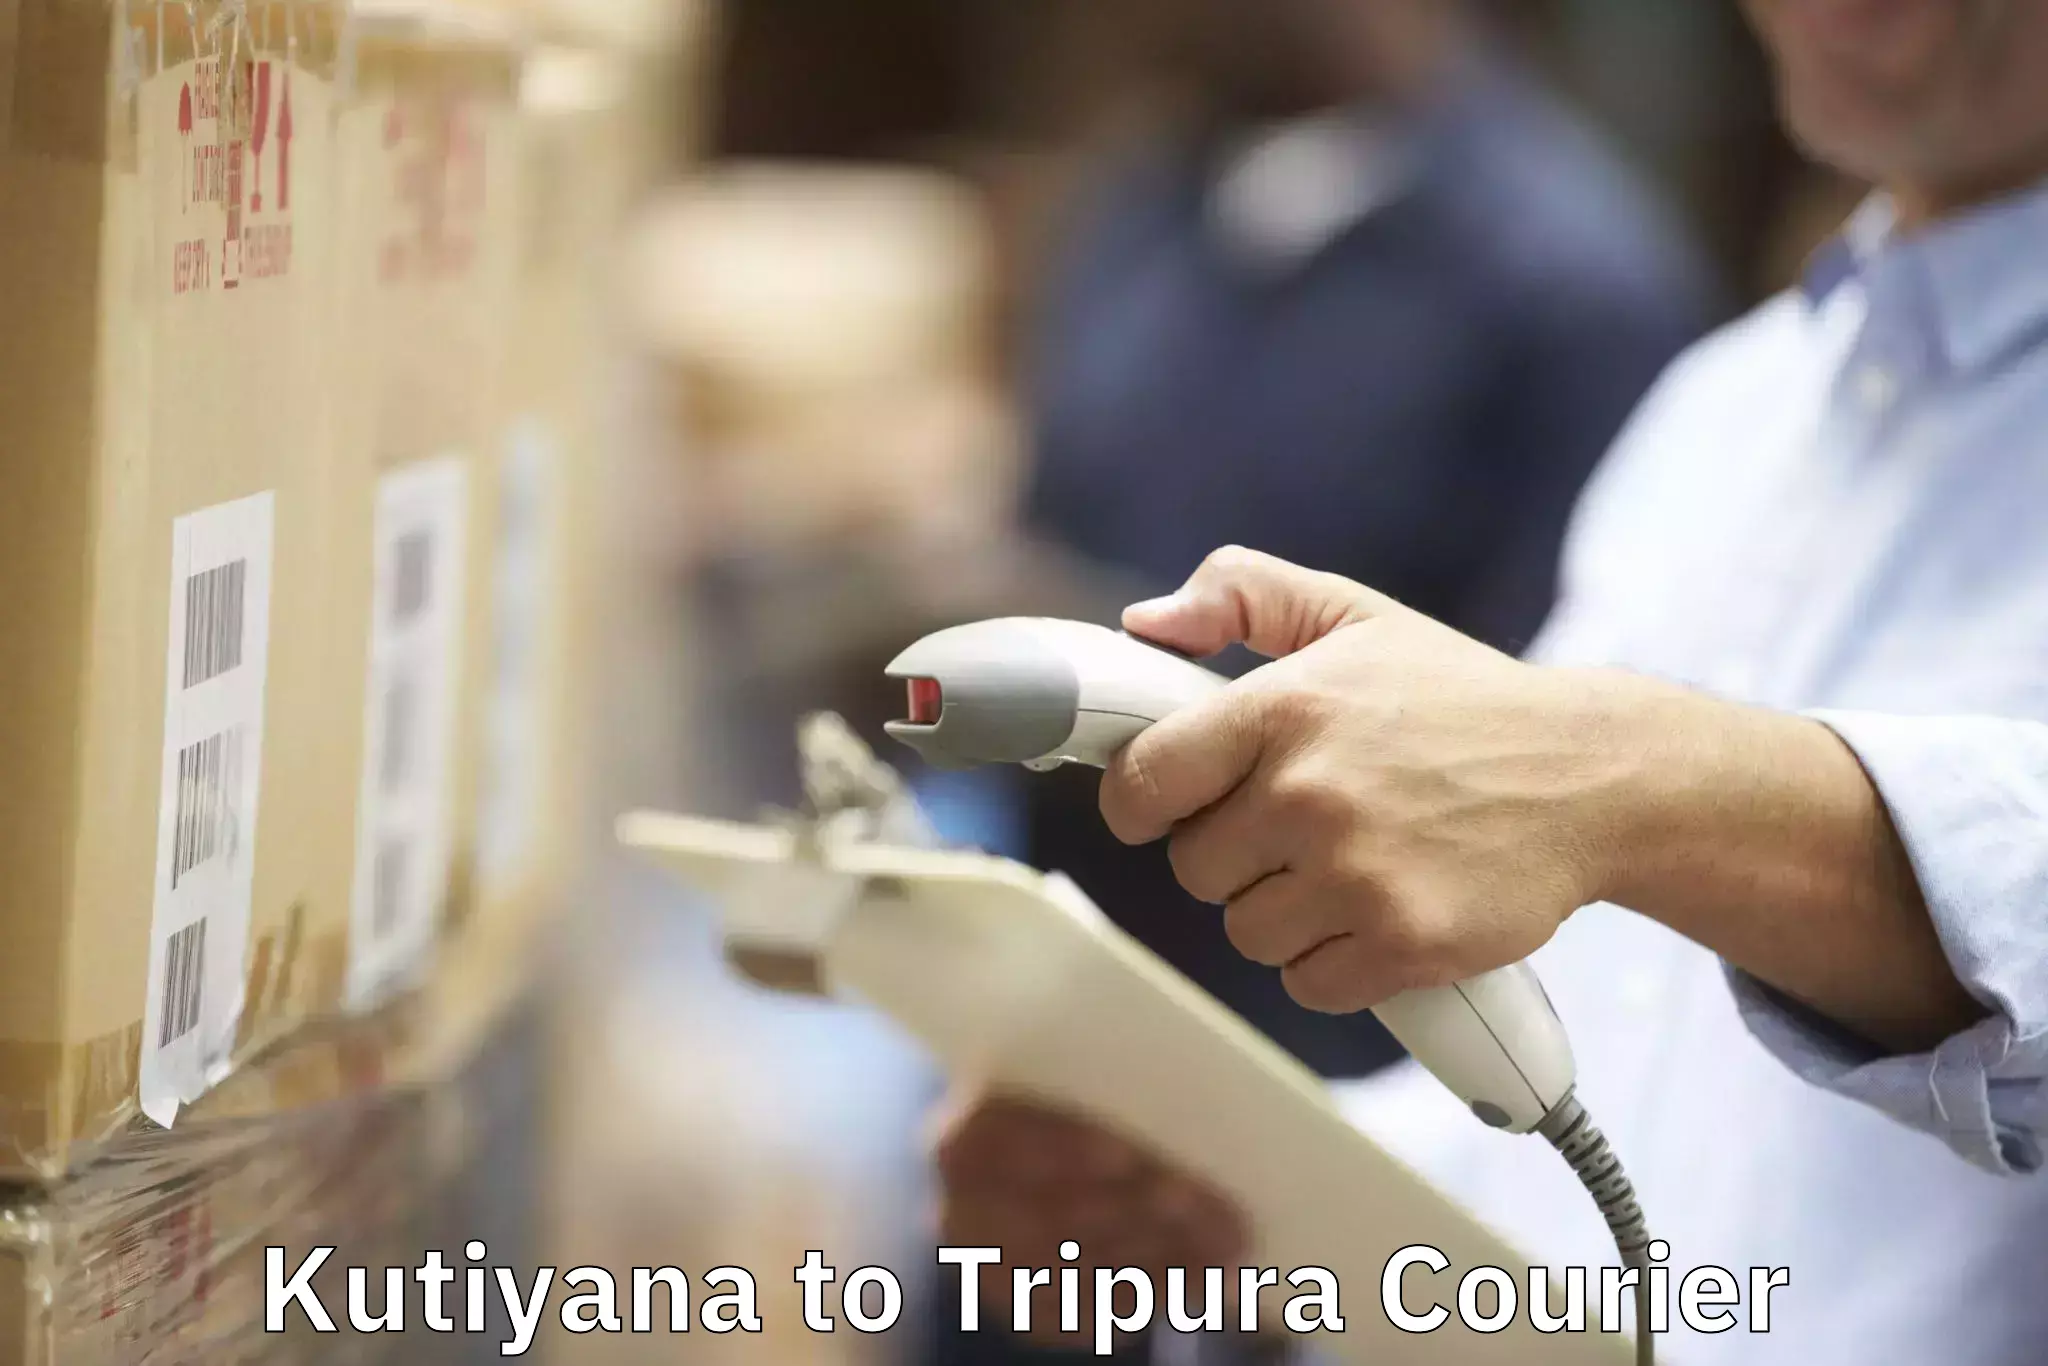 Furniture transport services Kutiyana to Tripura